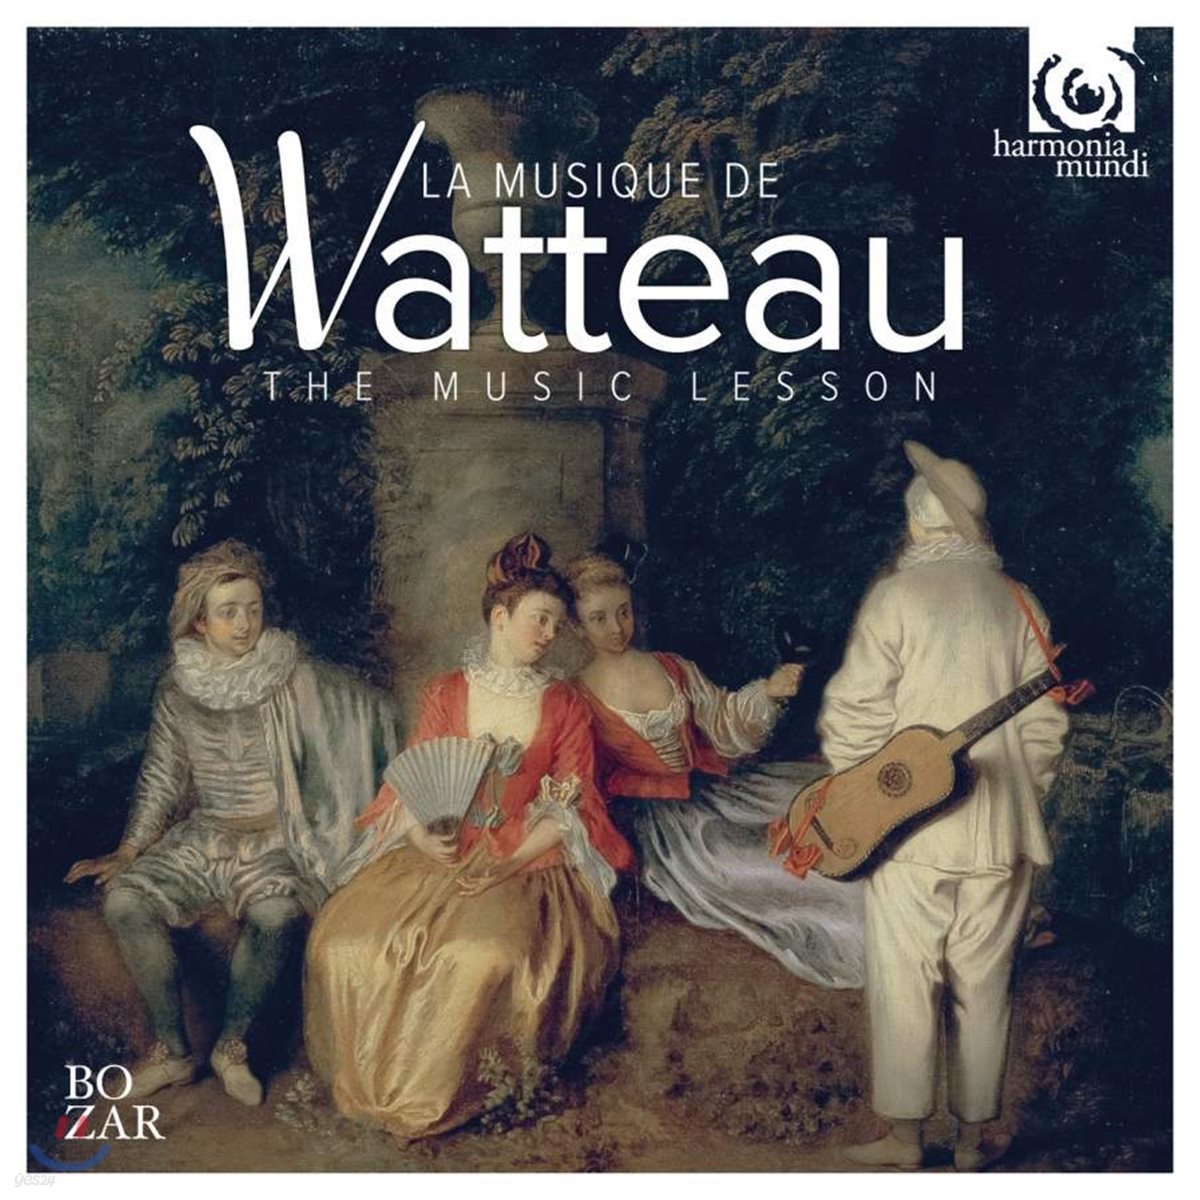 Les Arts Florissants 와토의 음악 레슨 (La Musique de Watteau)